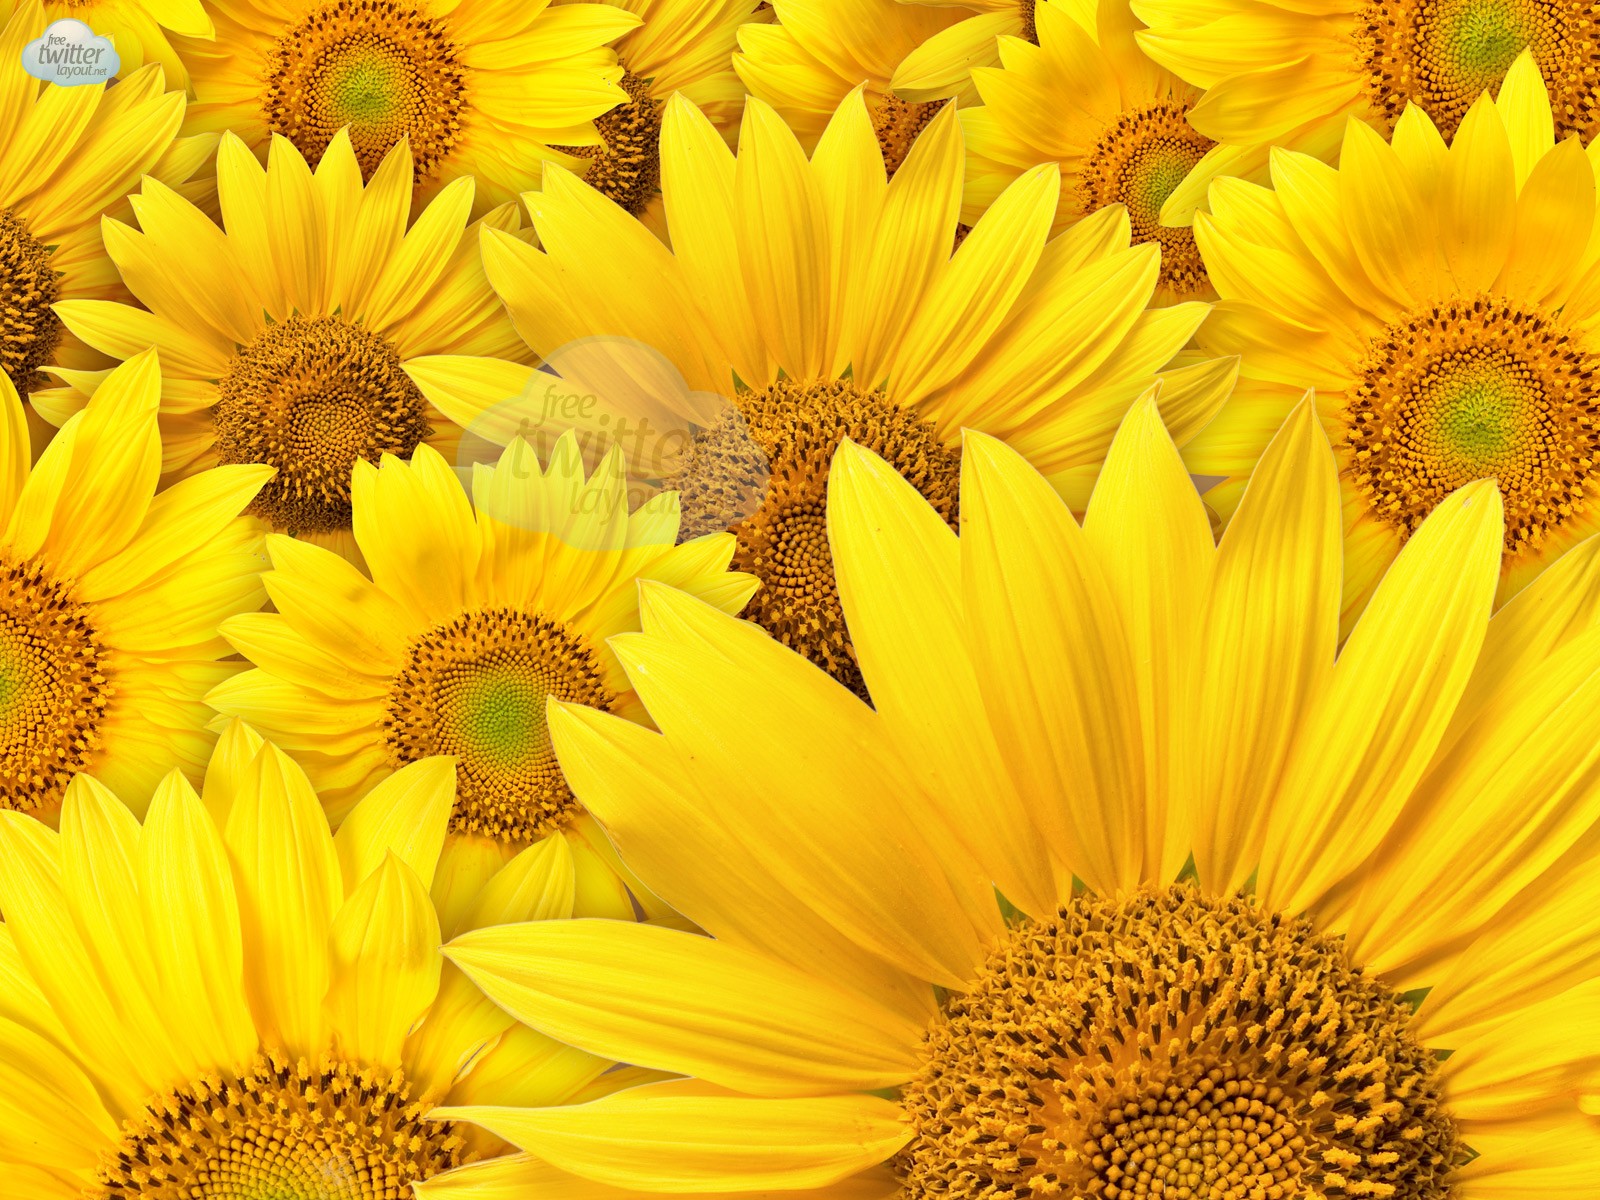 Yellow sunflower photo